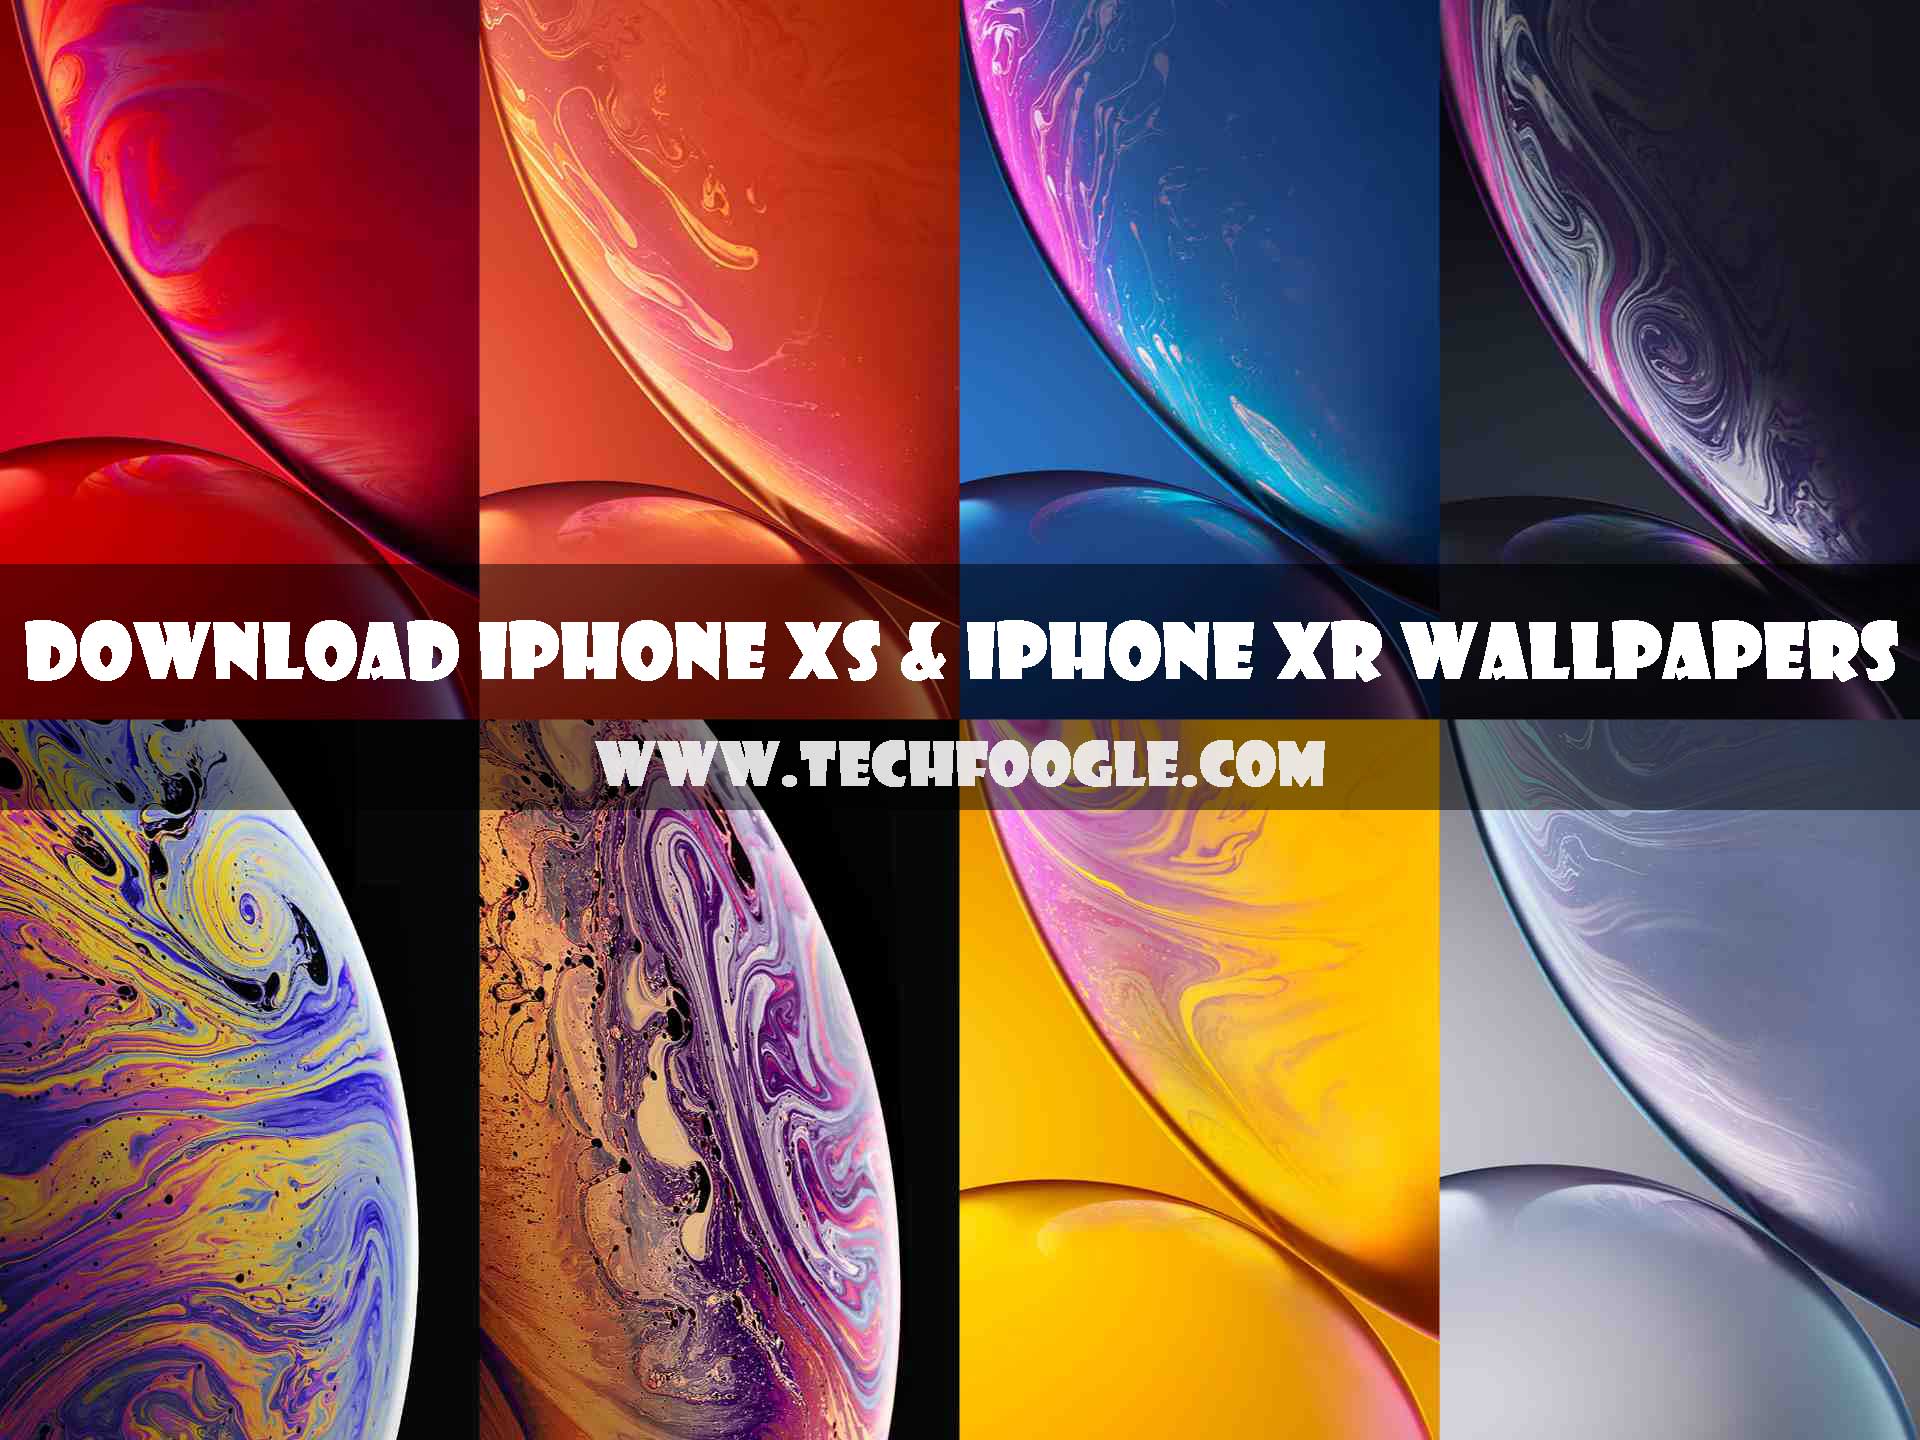 44+] iPhone XS 4k Wallpapers - WallpaperSafari